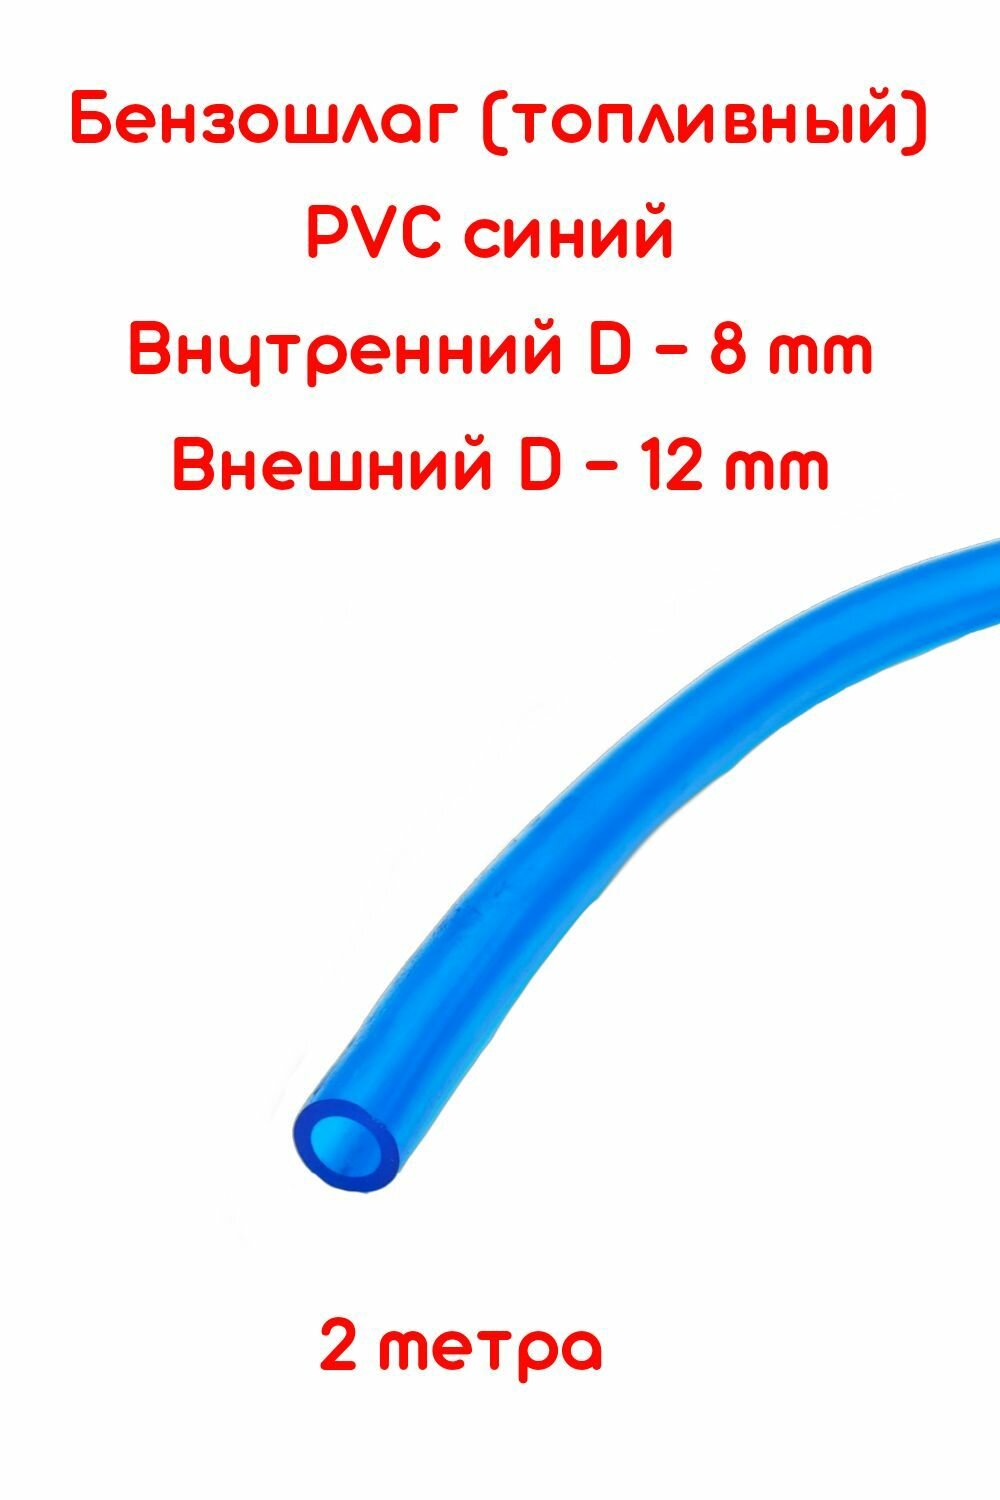 Бензошланг синий / топливный шланг 8 мм PVC (ПВХ) маслобензостойкий 2 метра / бензошланг для мотоцикла/